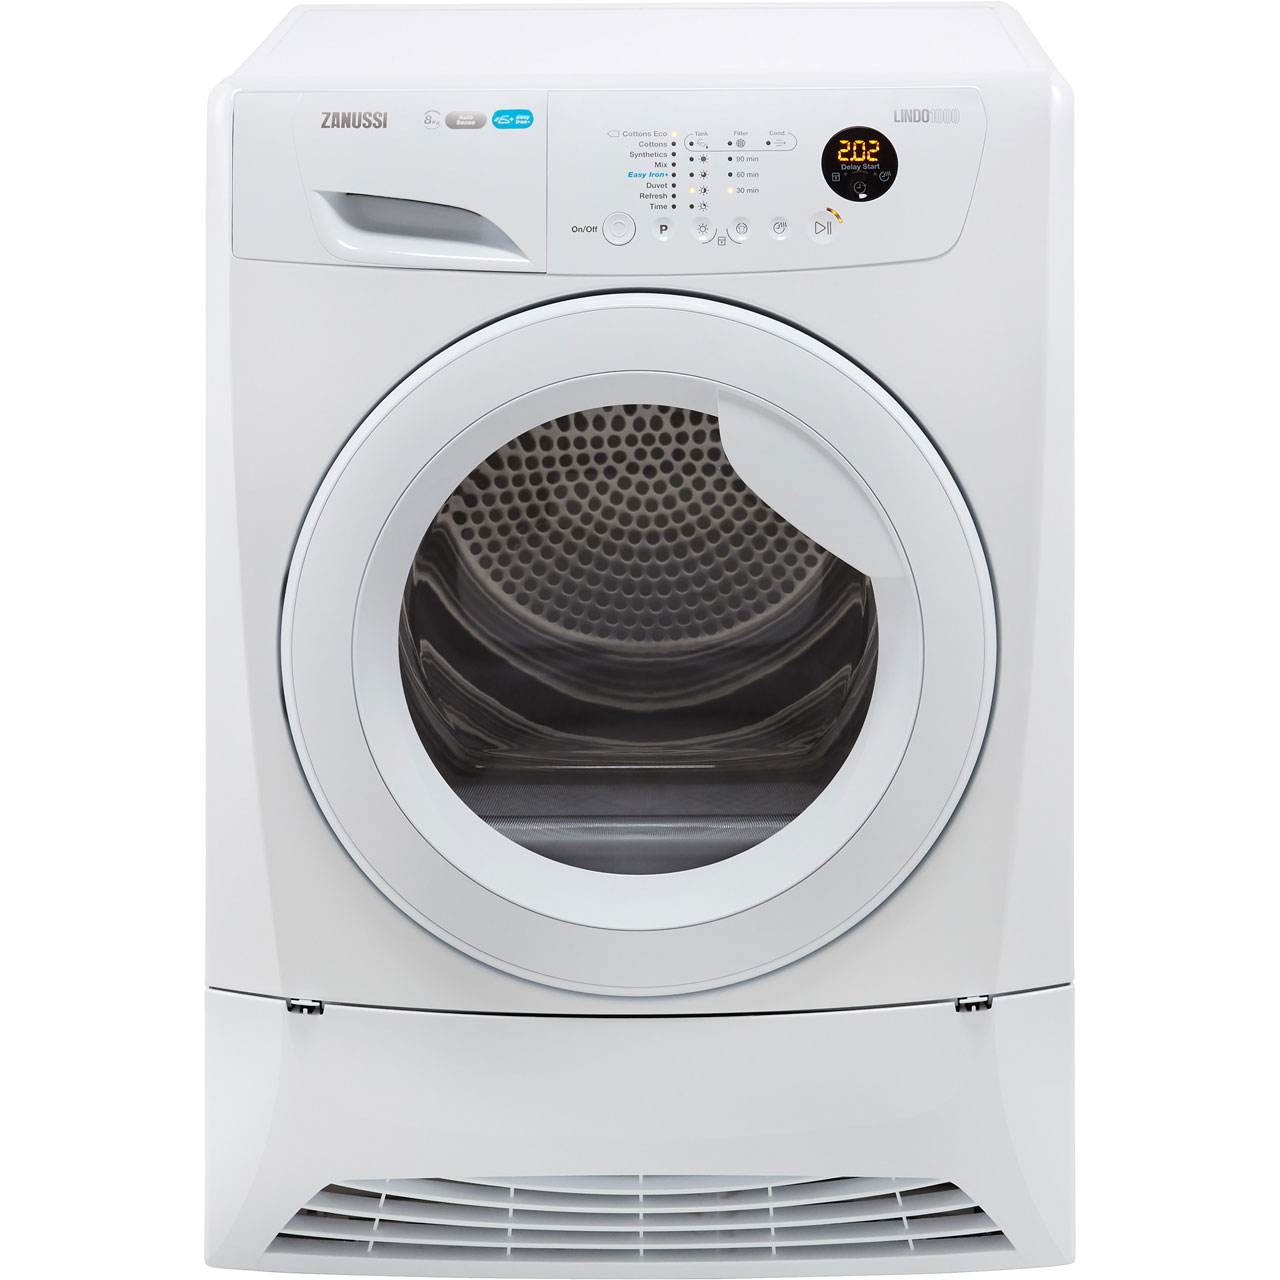 Zanussi ZDH8903W 8Kg Heat Pump Tumble Dryer Review